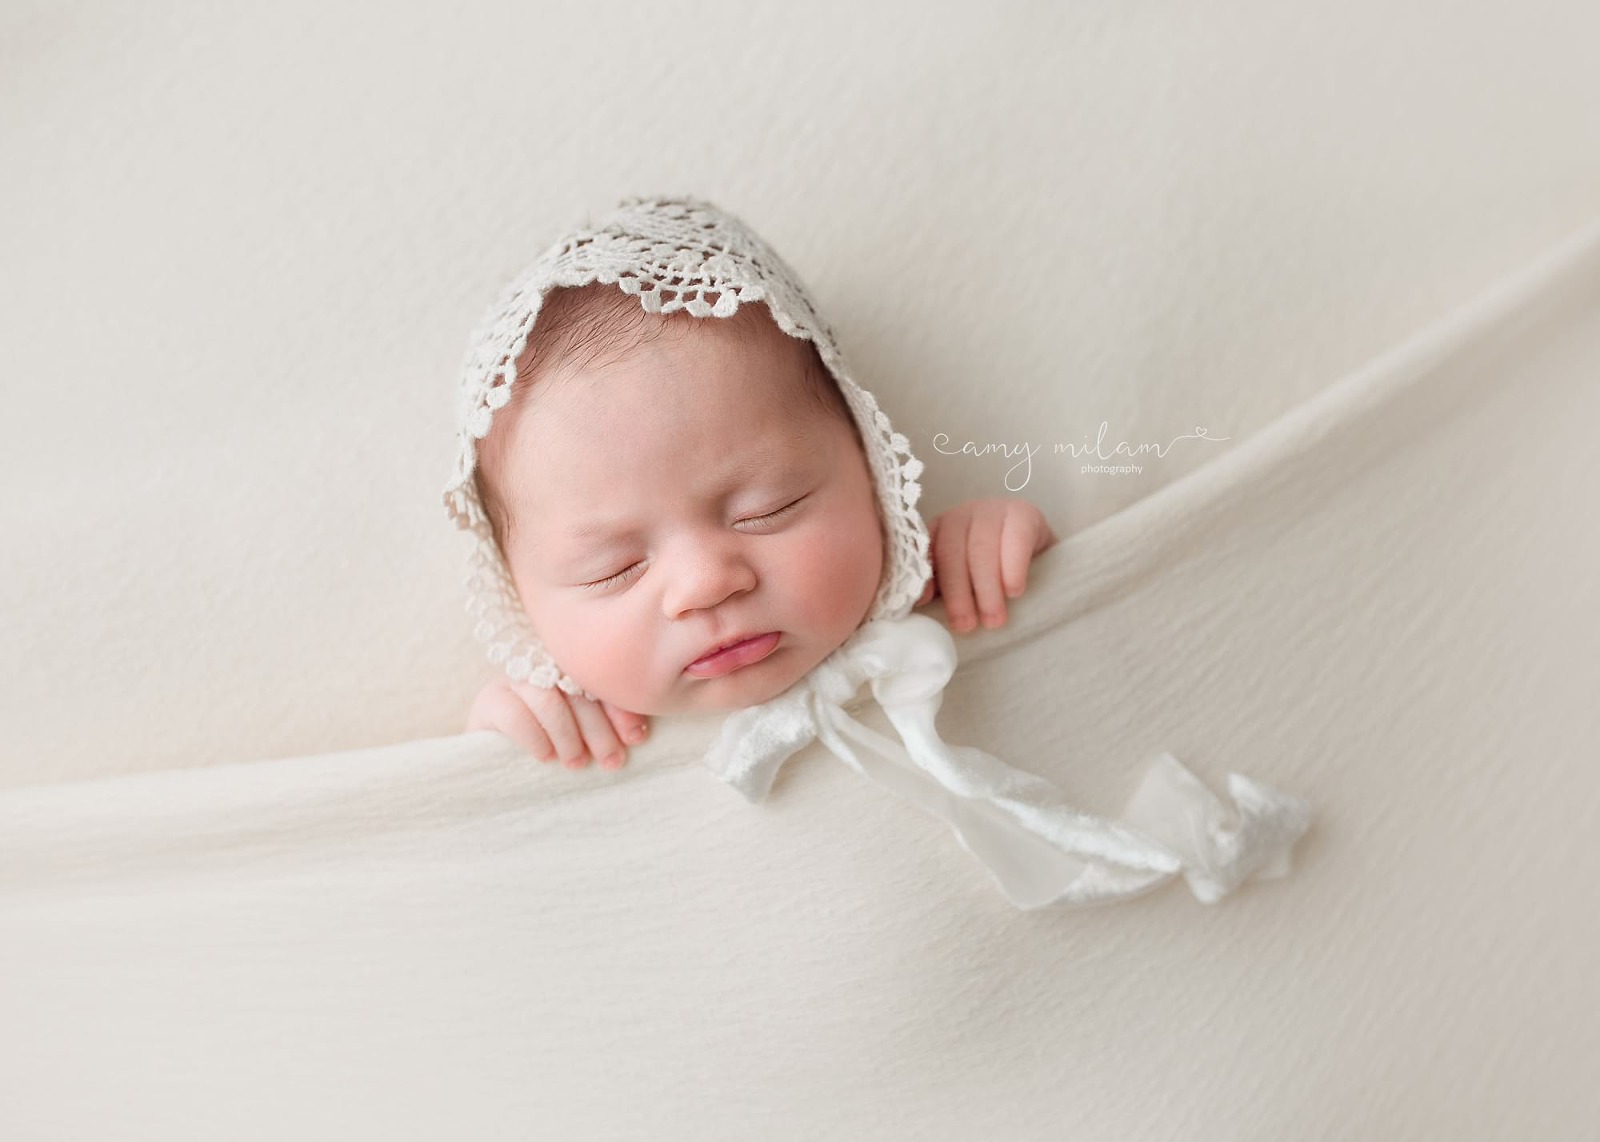 Lace bonnet newborn image New Orleans